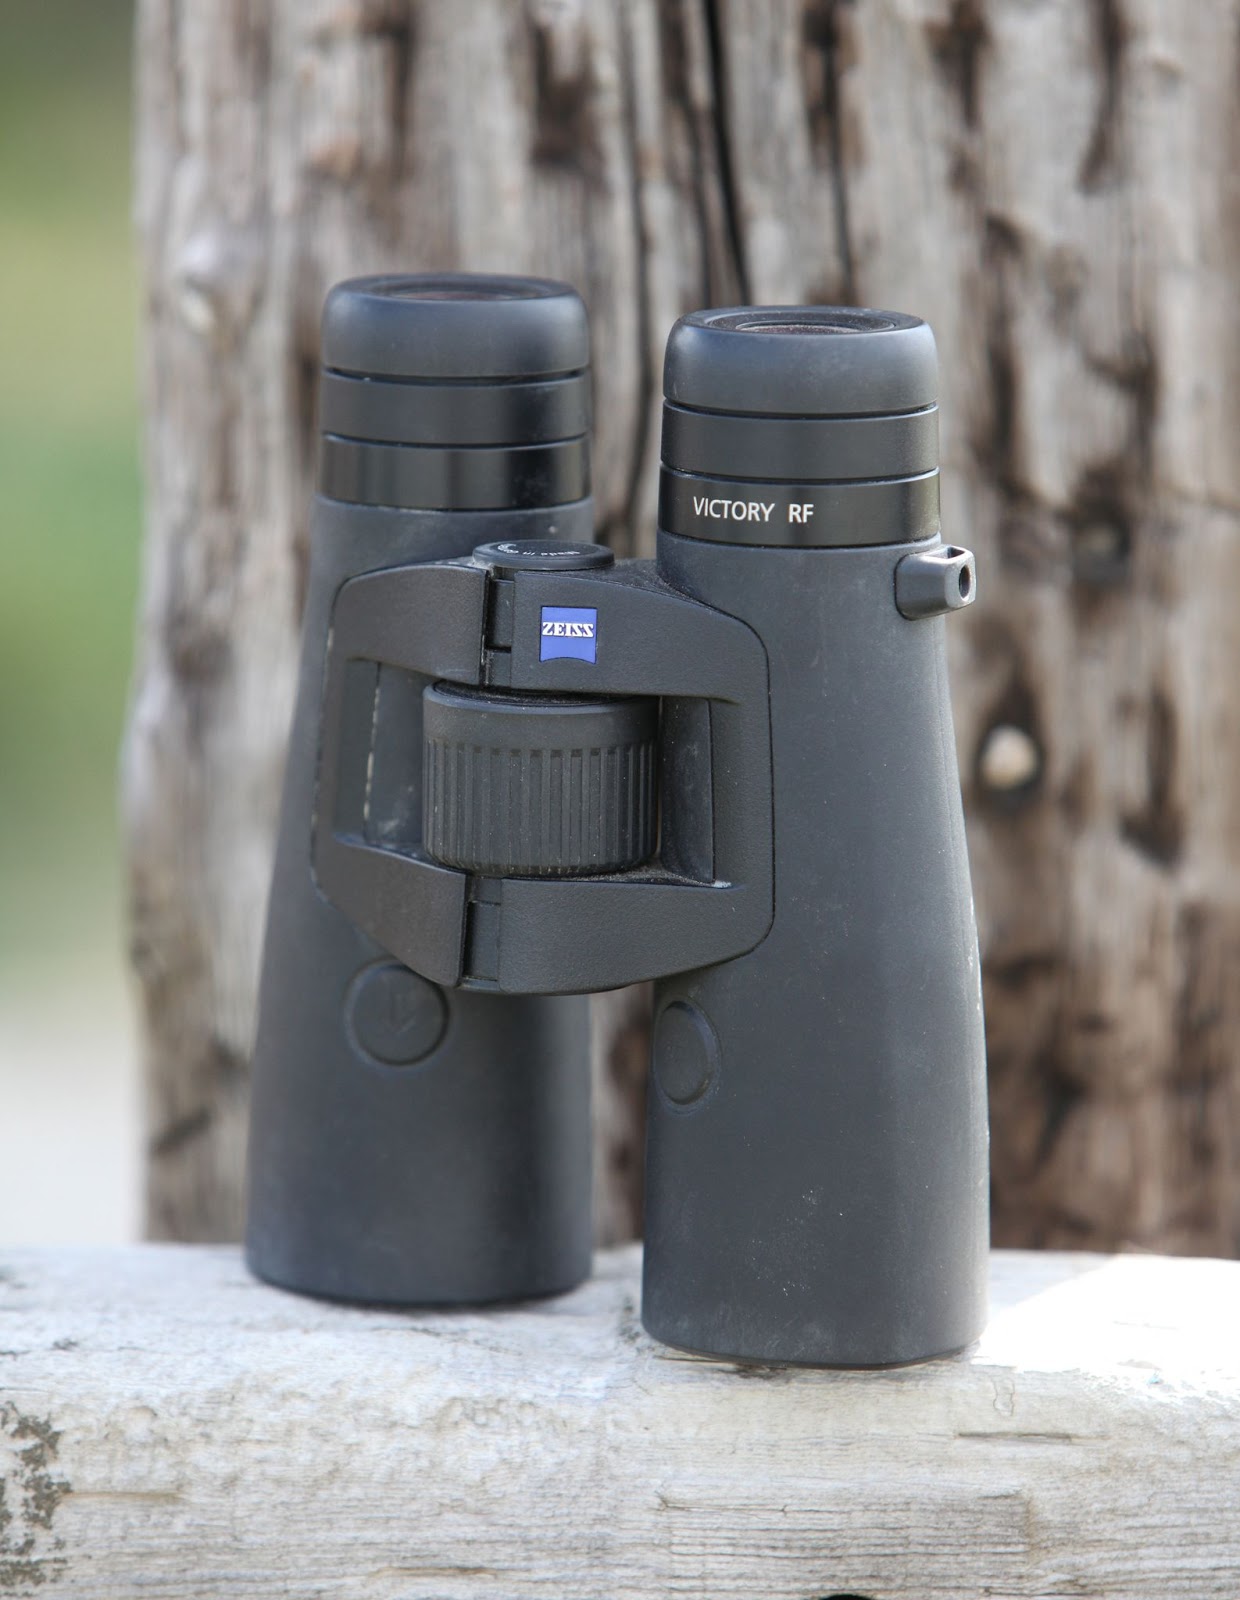 A pair of Zeiss Victory RF binoculars